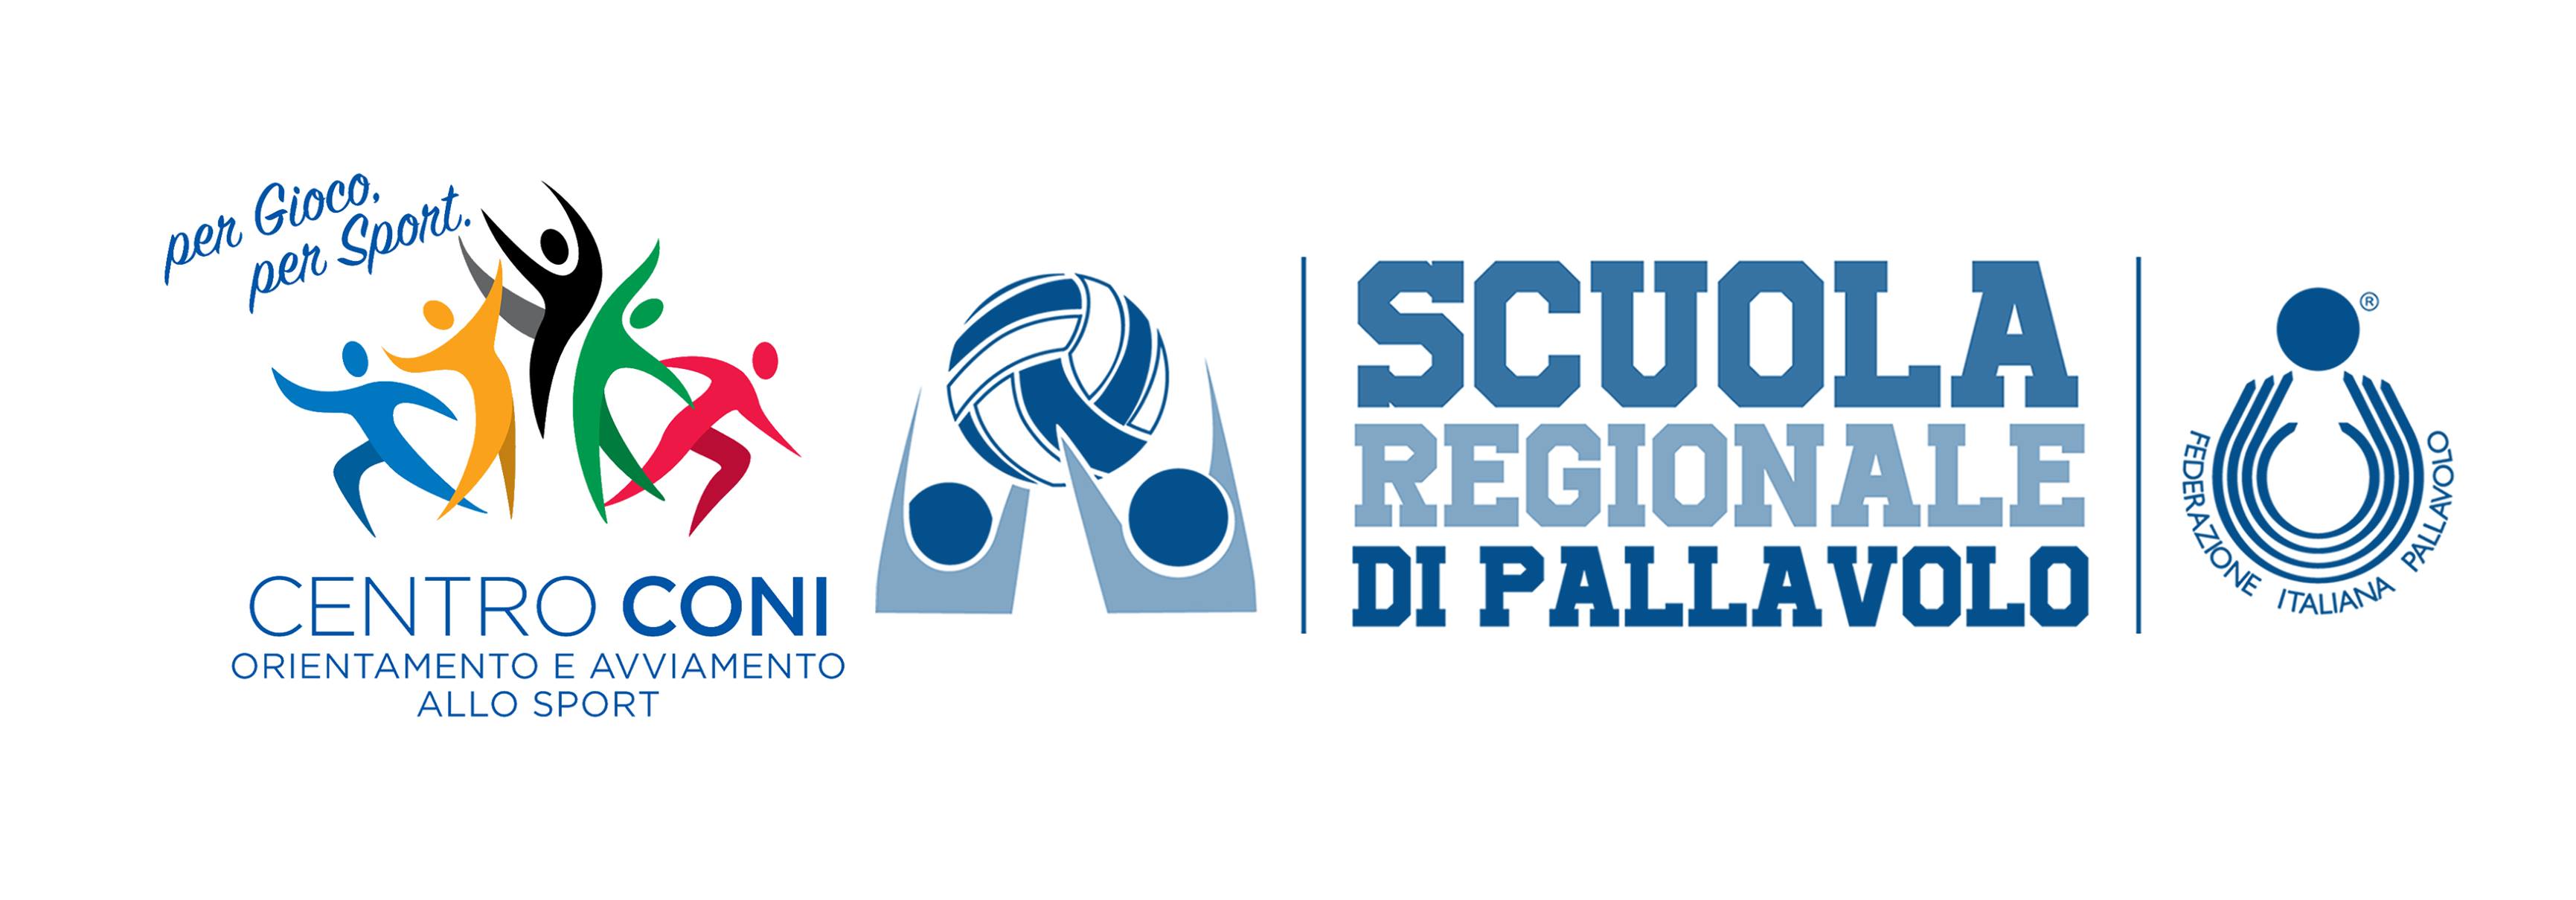 Banner_Coni_Scuola_Regionale.jpg